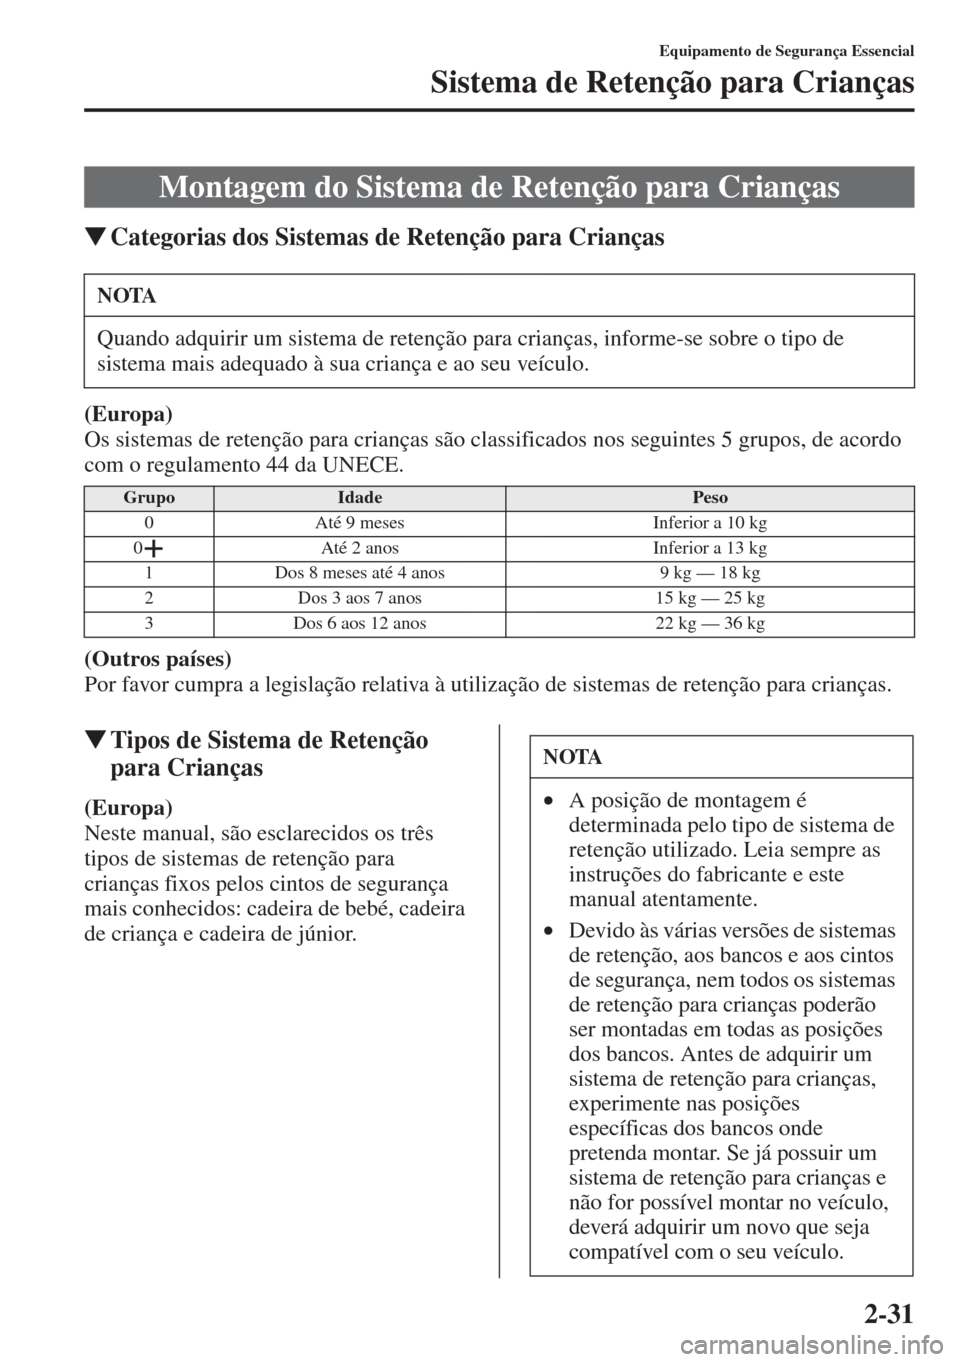 MAZDA MODEL CX-5 2015  Manual do proprietário (in Portuguese) 2-31
Equipamento de Segurança Essencial
Sistema de Retenção para Crianças
�WCategorias dos Sistemas de Retenção para Crianças
(Europa)
Os sistemas de retenção para crianças são classificado